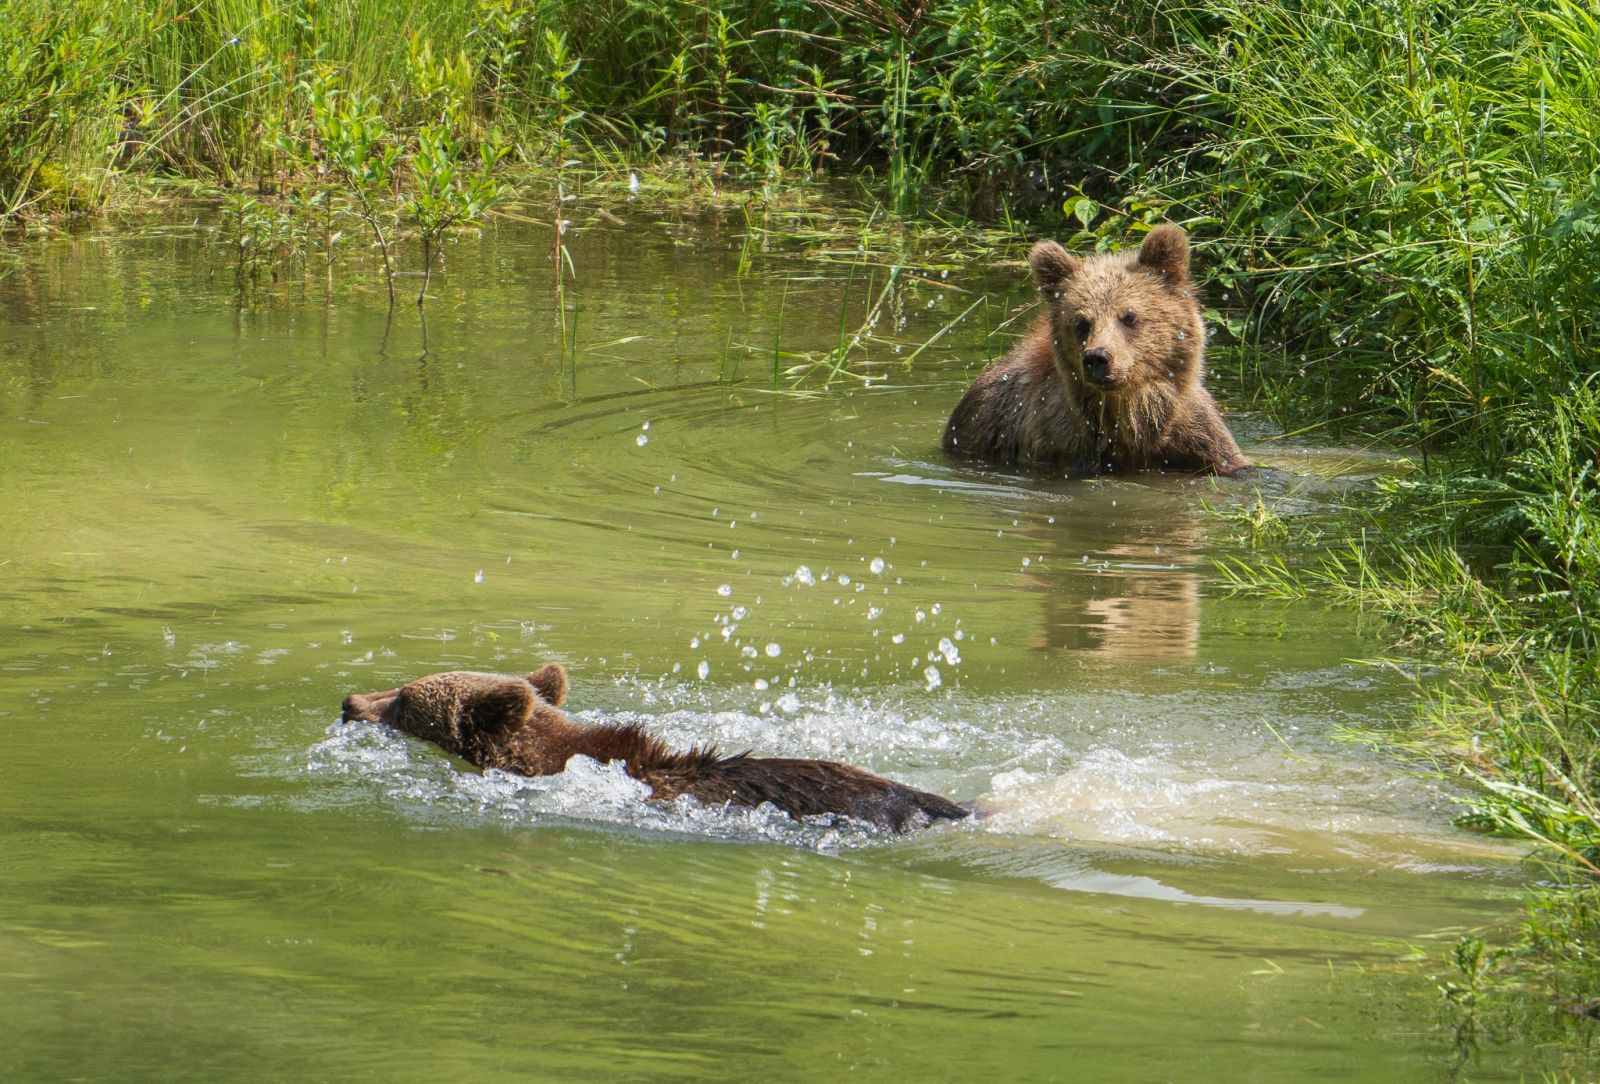 Foto: Medvedí wellness. Fotograf zachytil úžasné zábery kúpajúcich sa medveďov v prírode na hornej Nitre